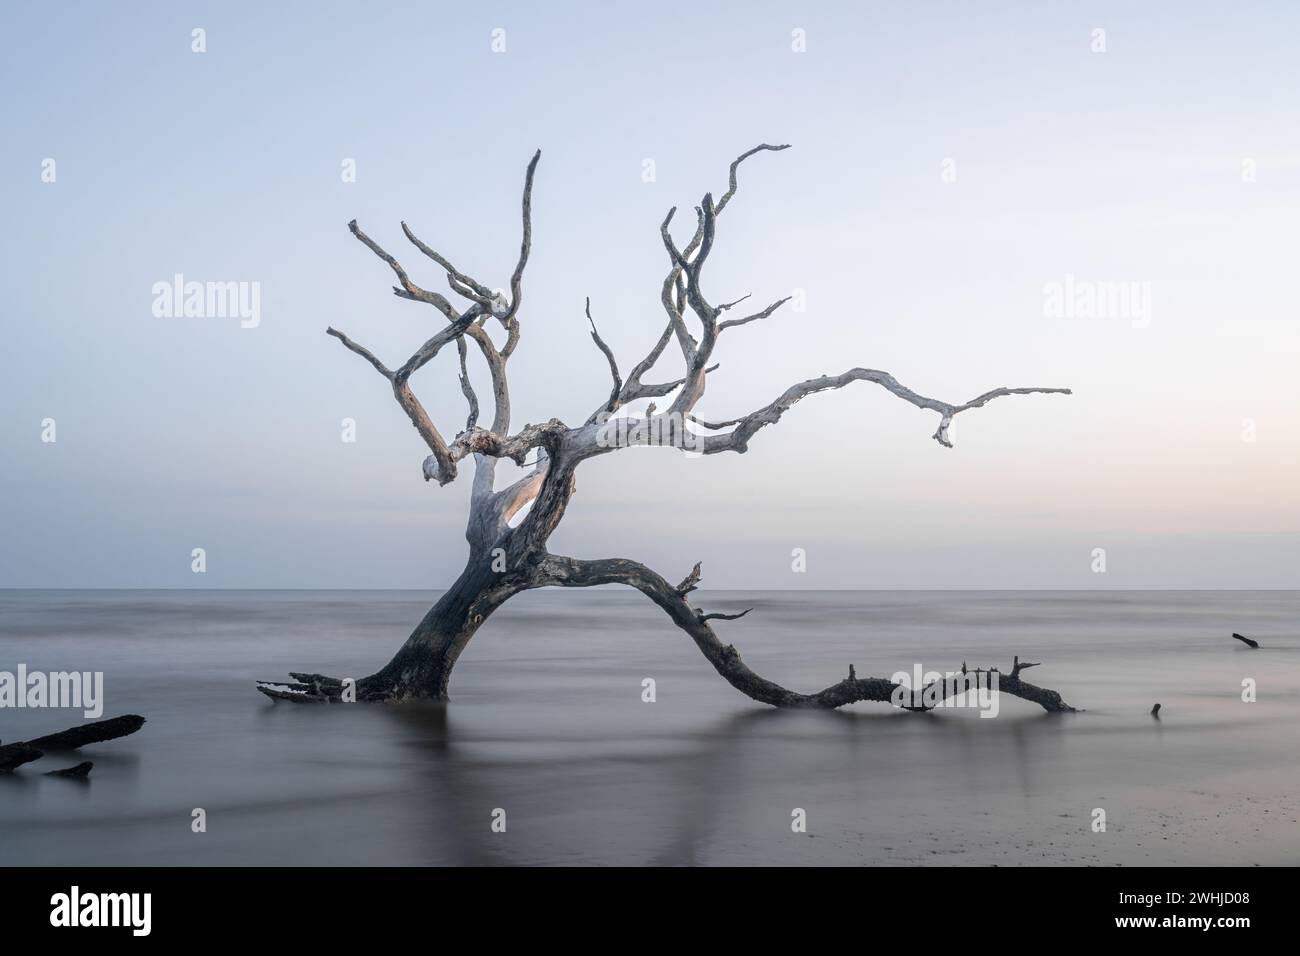 Paesaggio marino meditativo con albero morto e palude al sorgere del sole Foto Stock